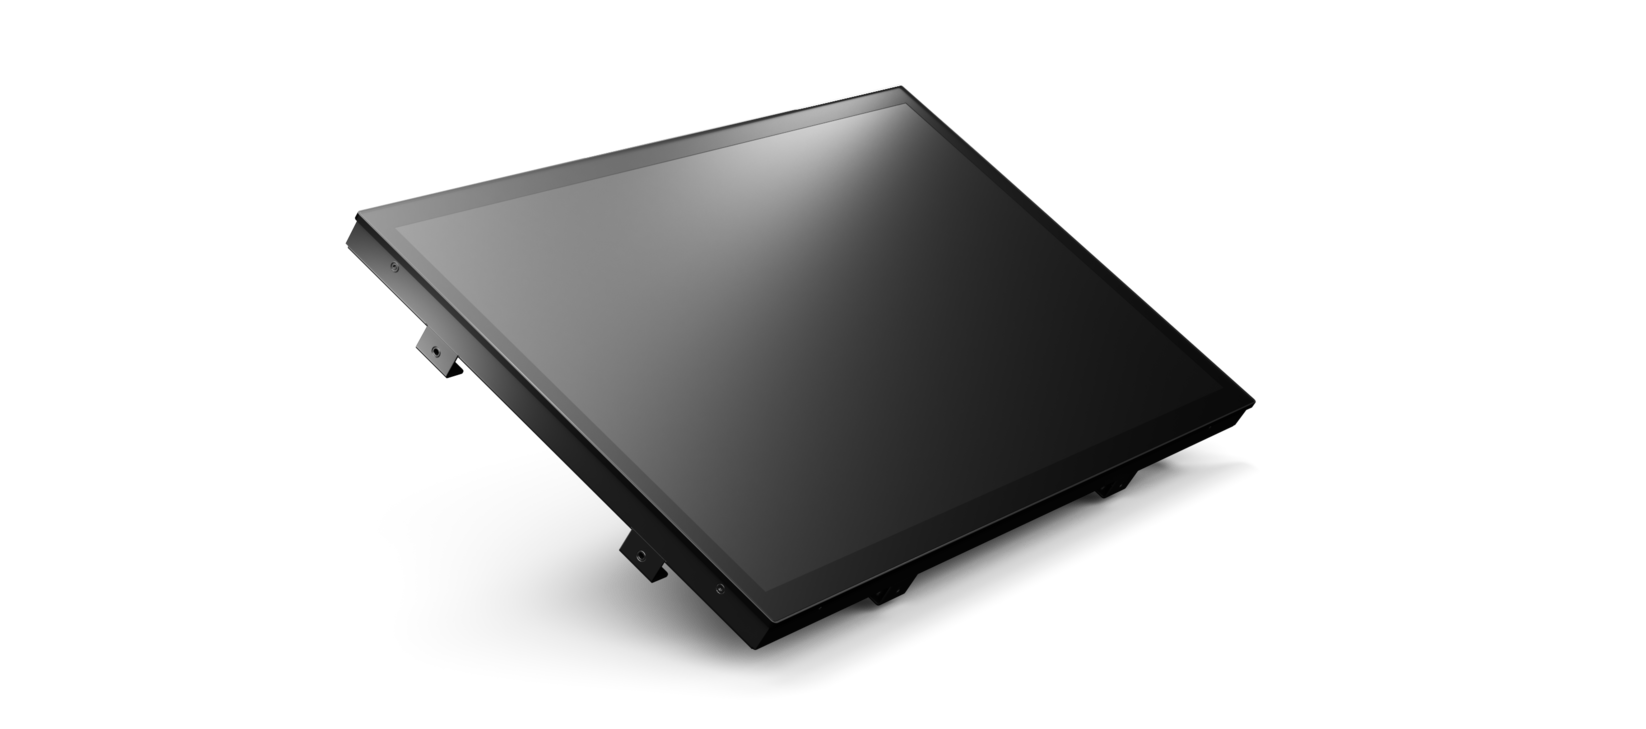 Produktbild eines MIKKA All-In-One Monitors mit Micro PC (Odroid Board oder Raspberry Pi) z.B. bei Platzmangel | © MIKKA GmbH